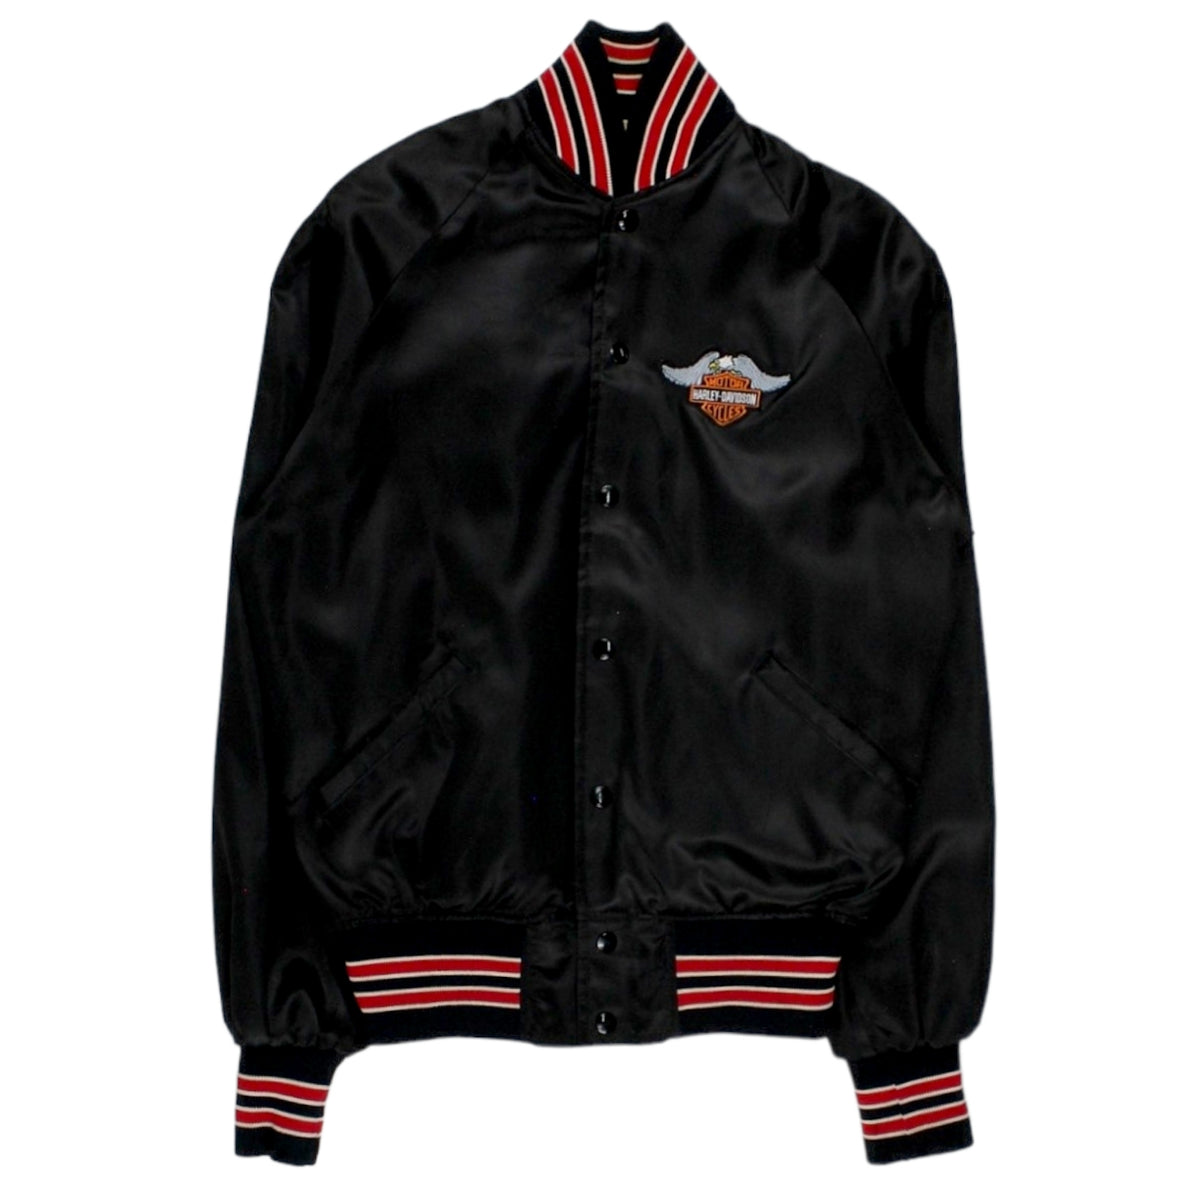 Howe Harley Davidson Black Bomber Jacket